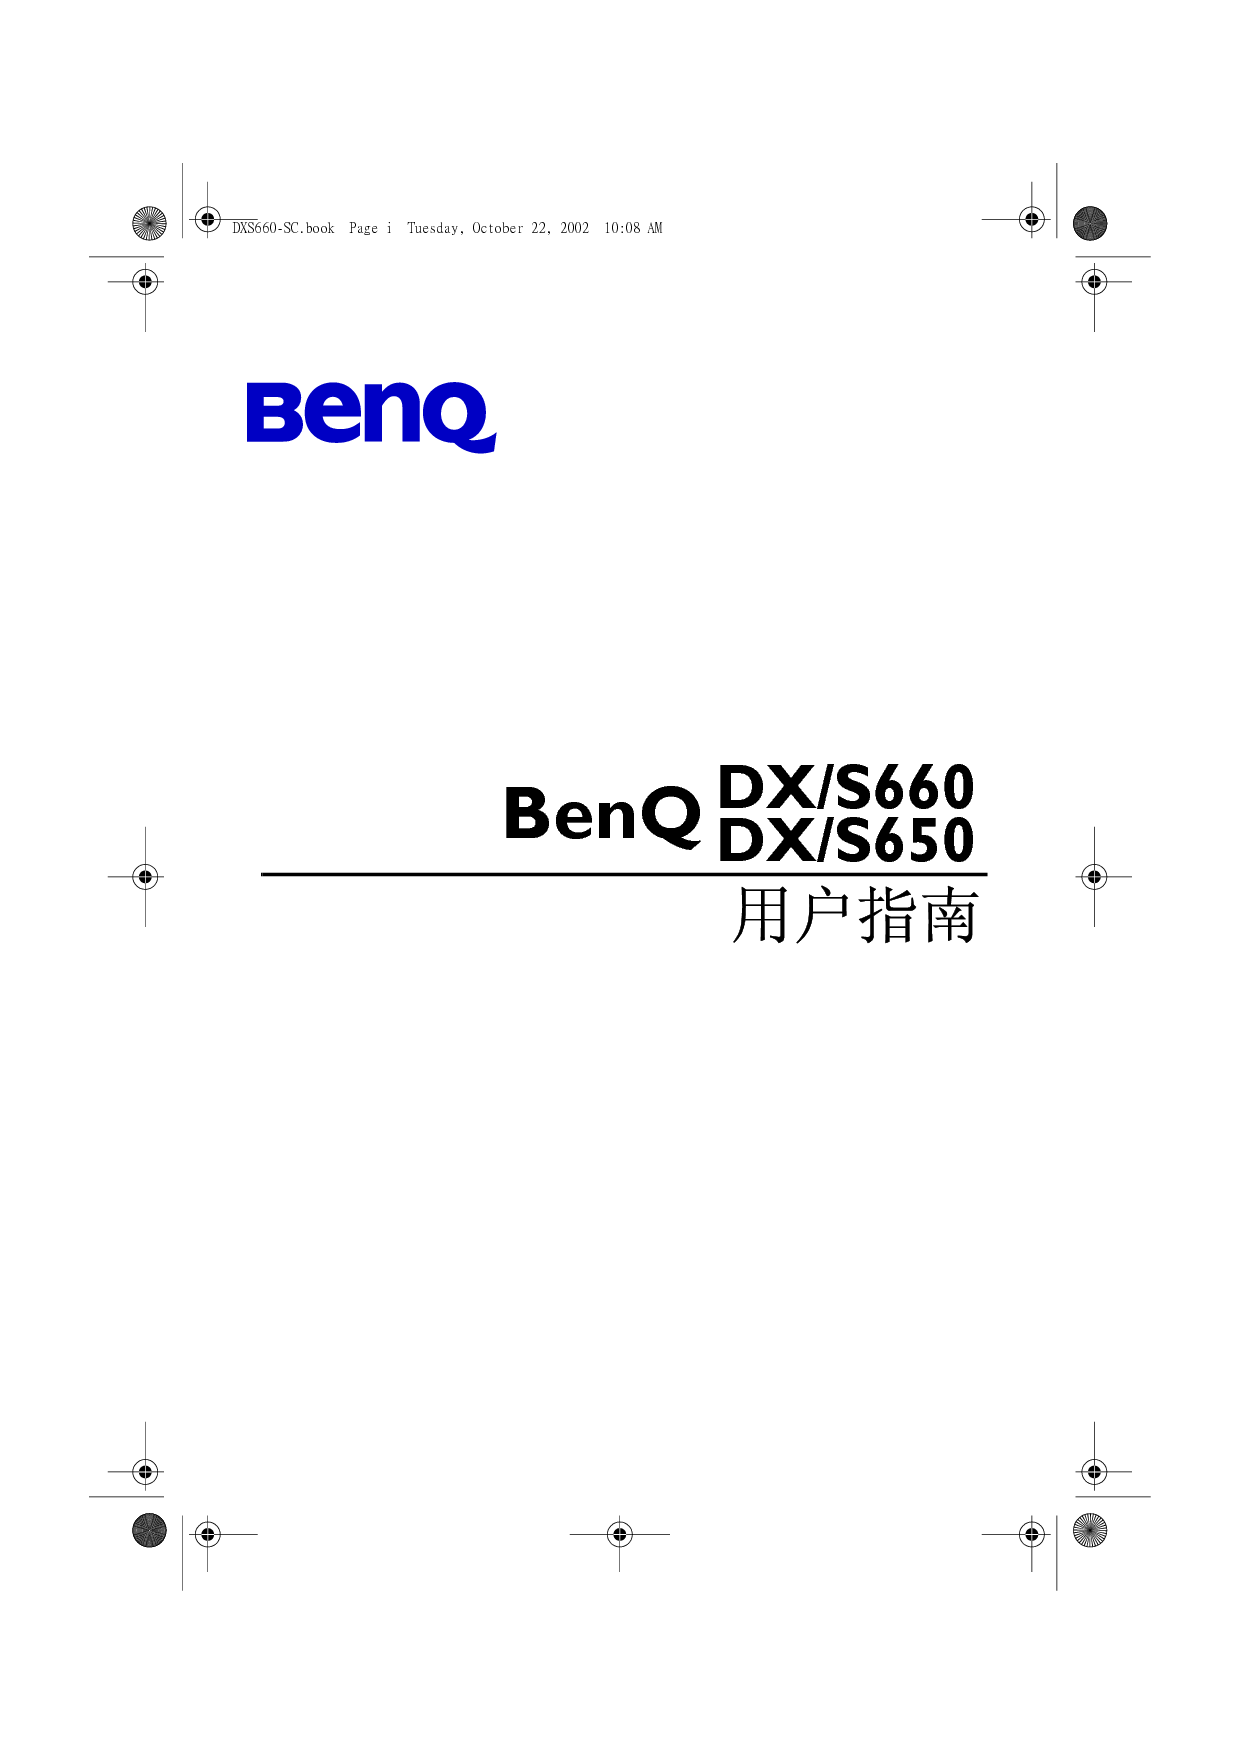 明基 Benq DS650, DX660 使用手册 封面